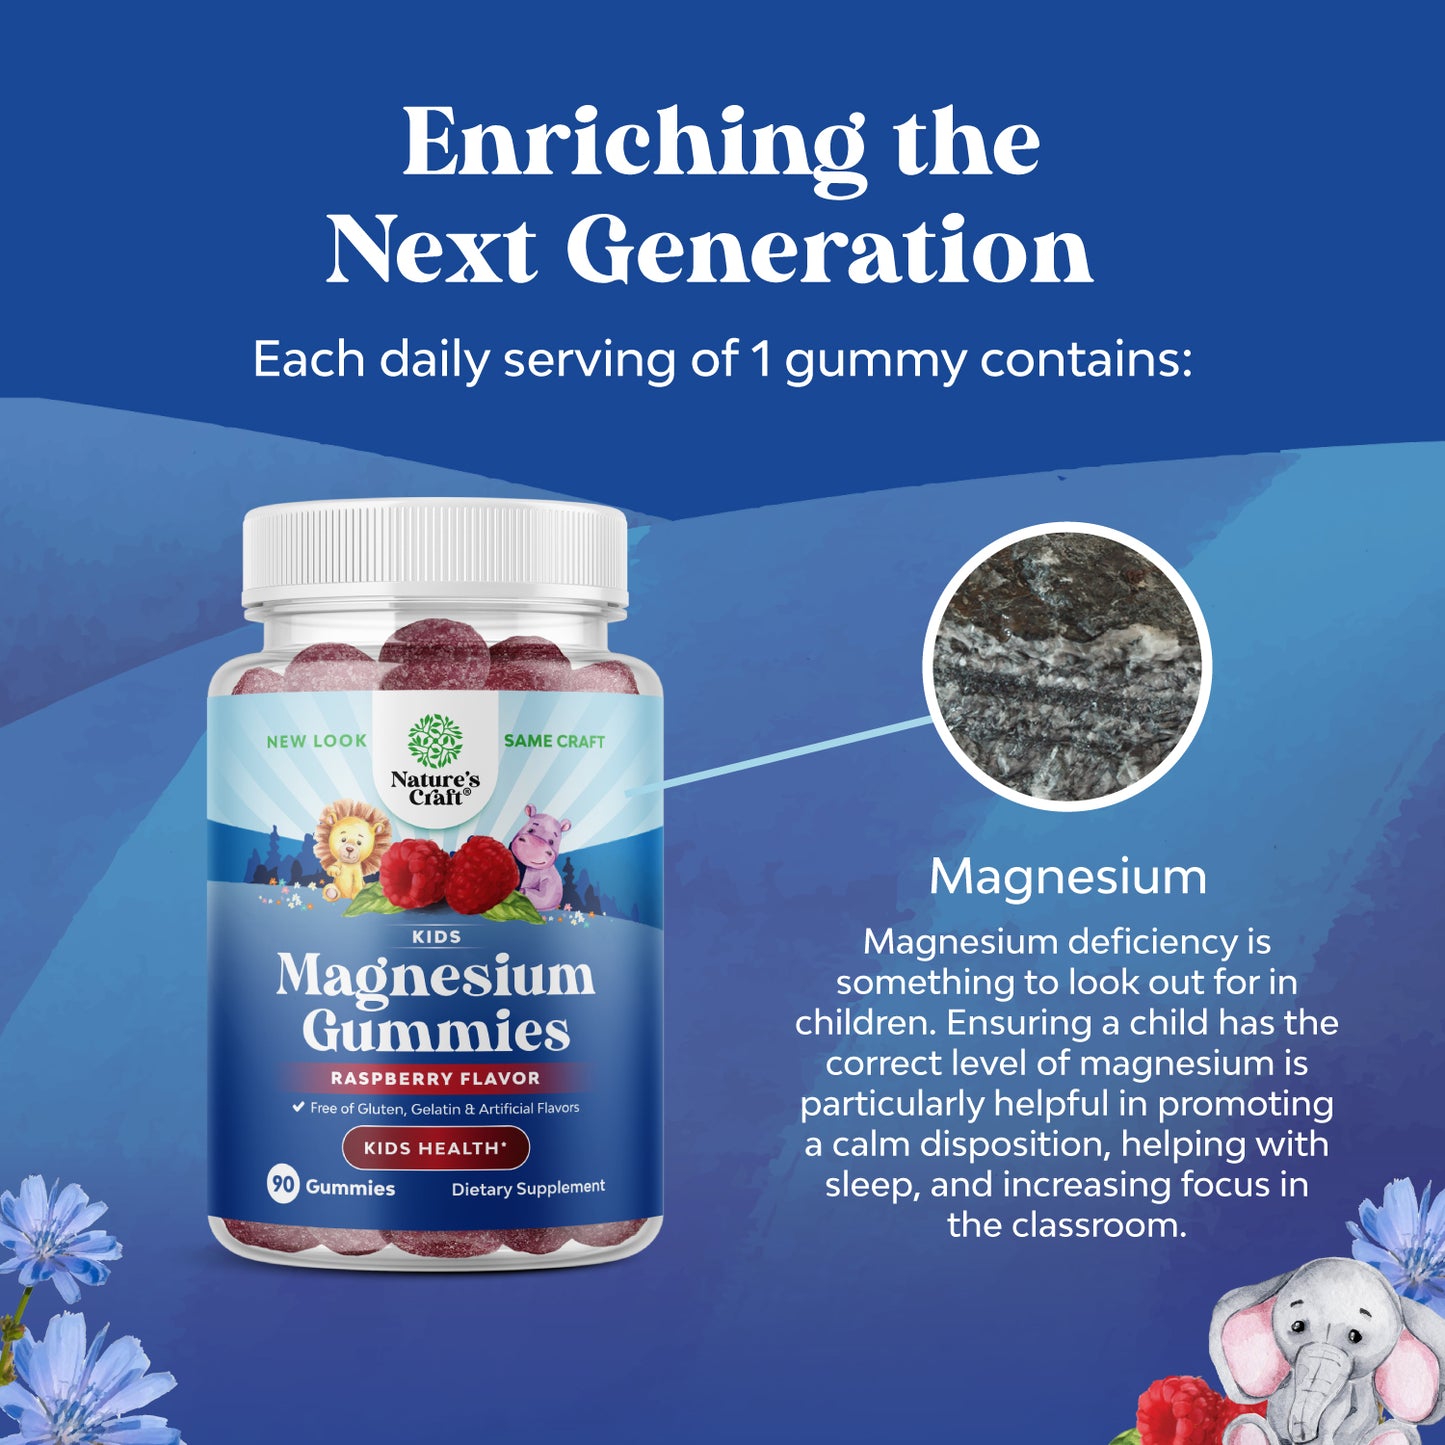 Magnesium for Kids - 90 Gummies - Nature's Craft